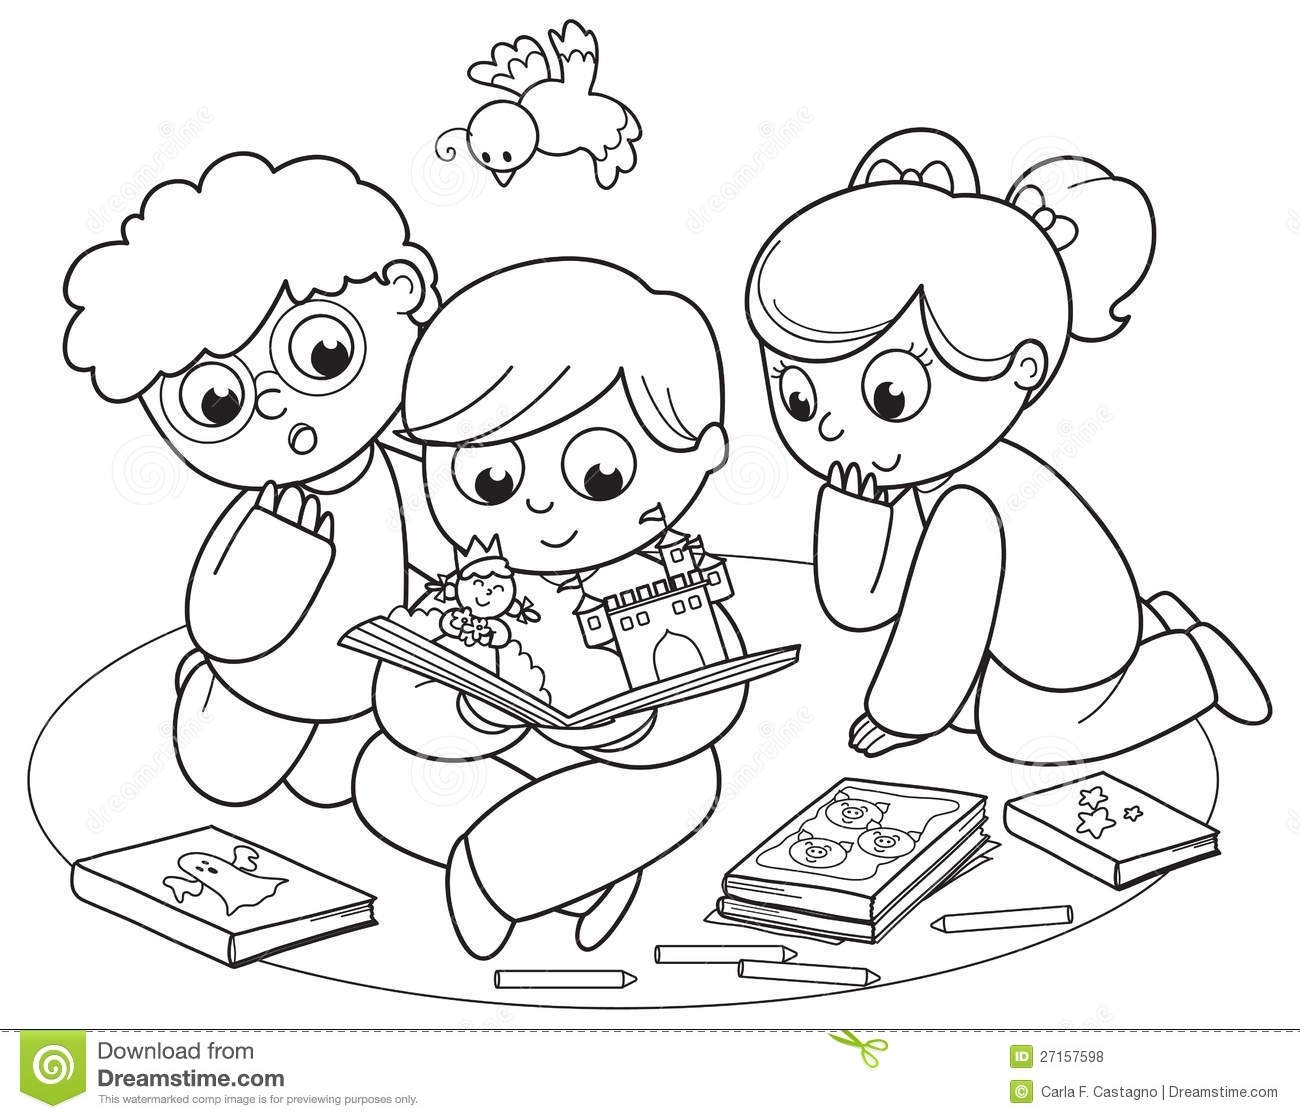 Children reading books.